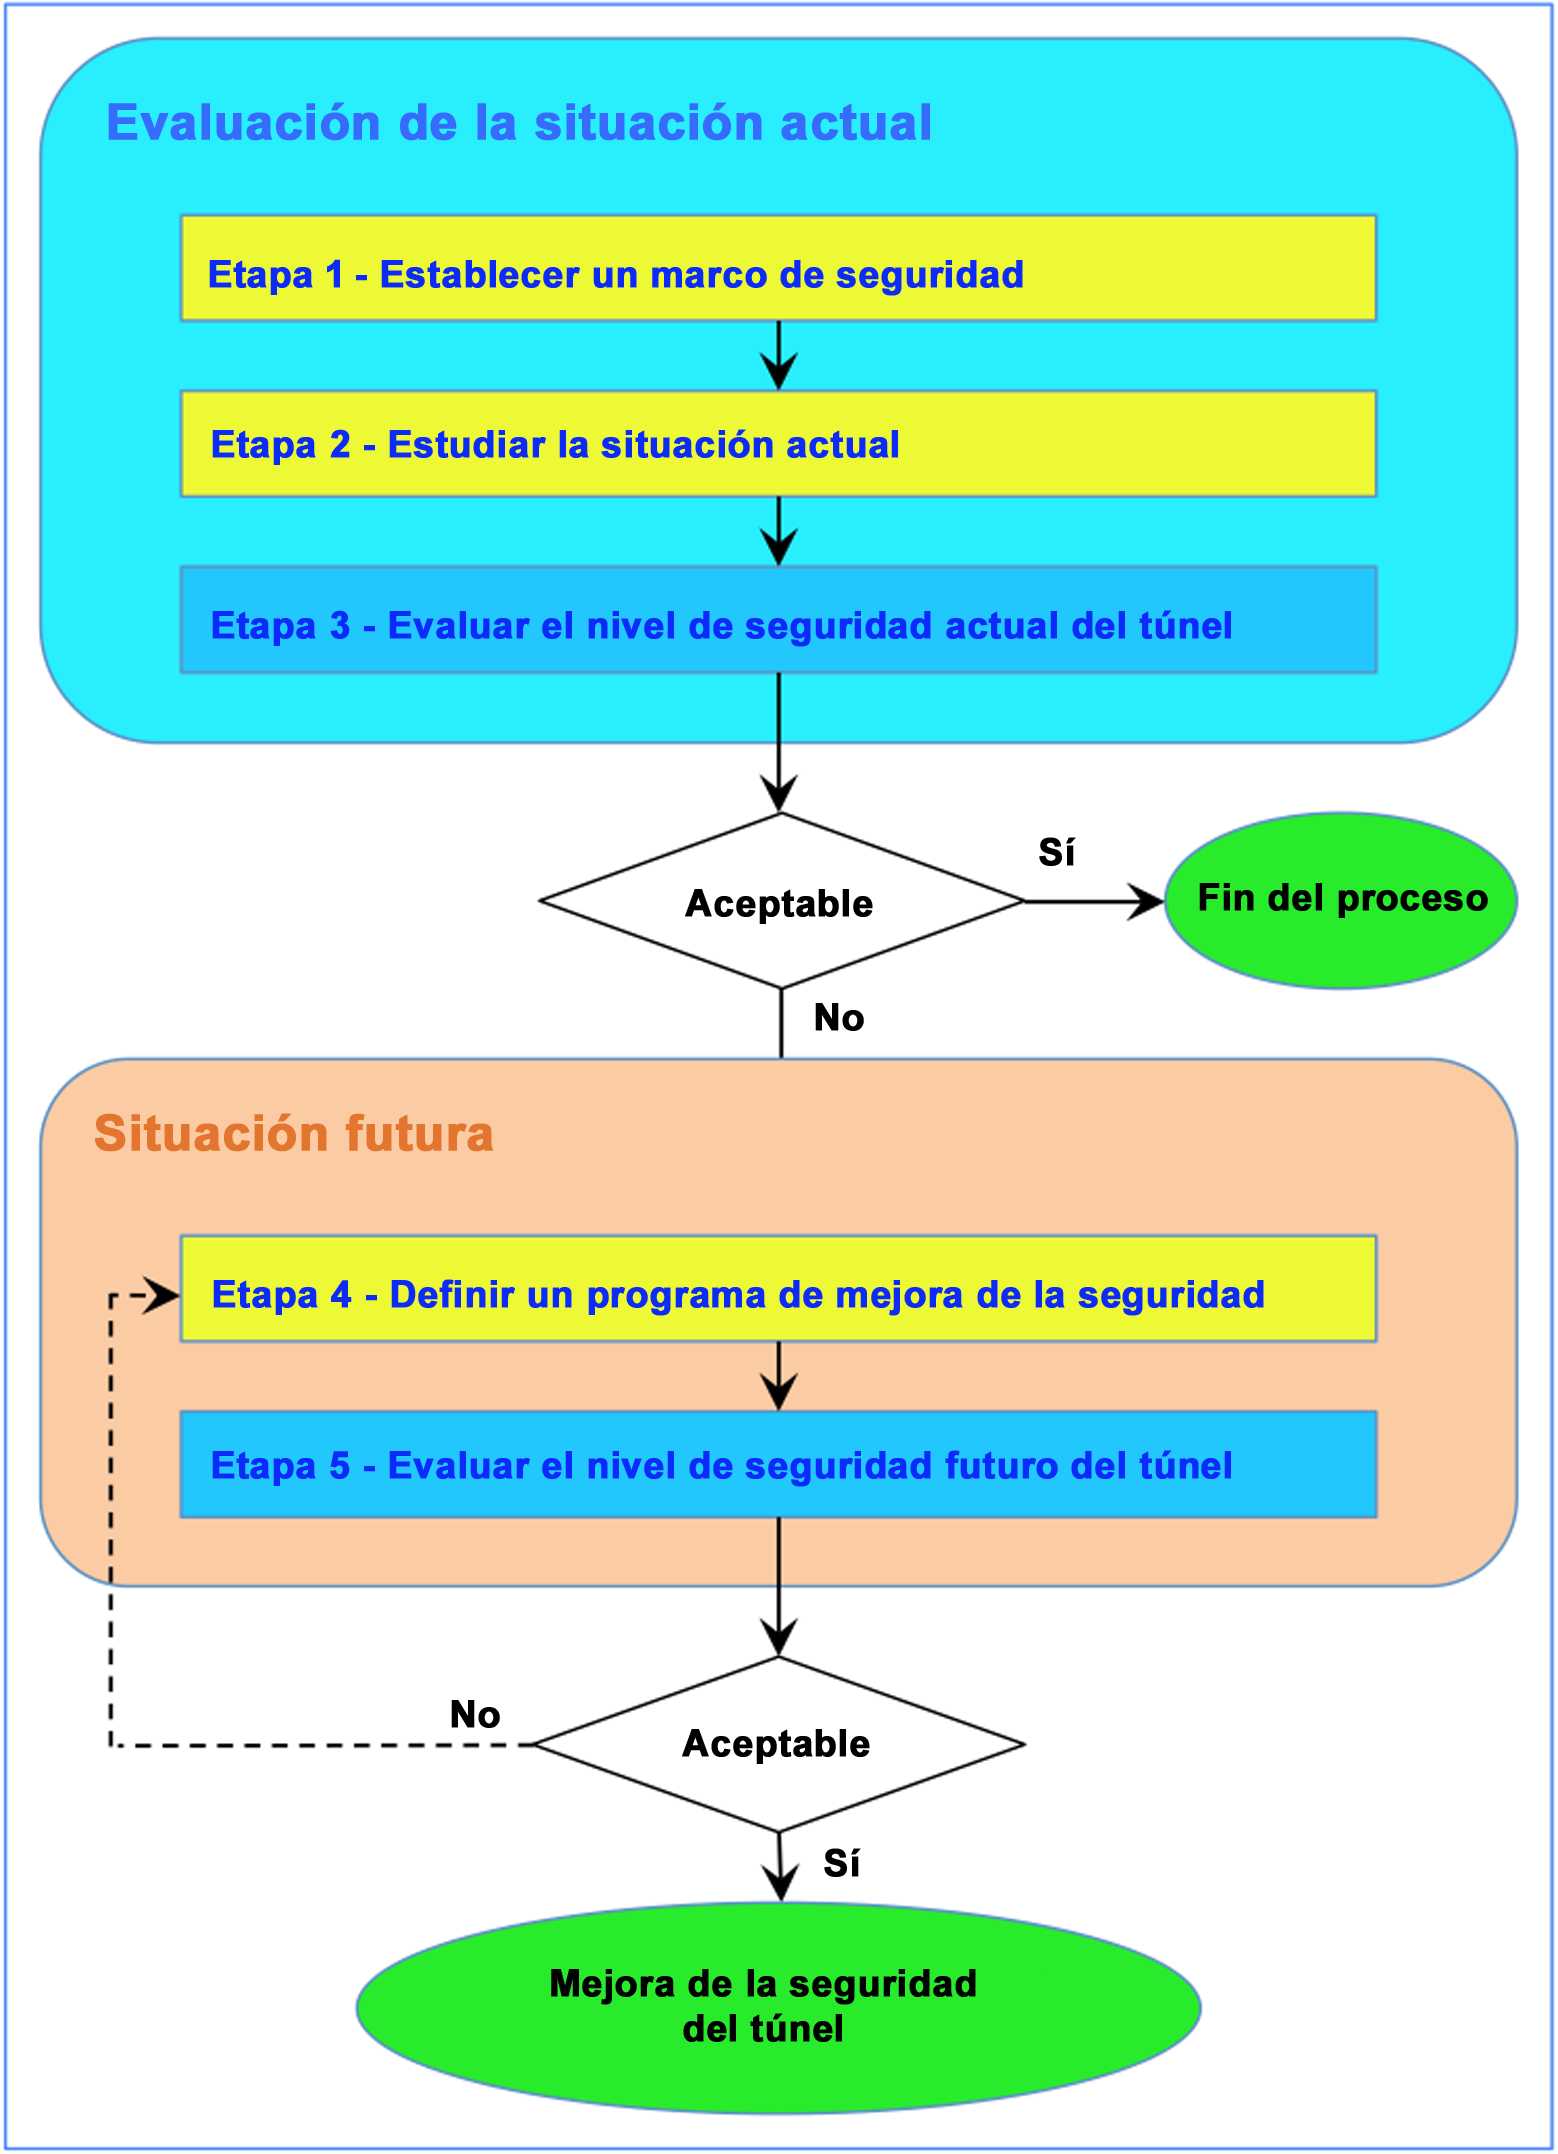 Fig. 1: Organigrama del proceso con varias etapas